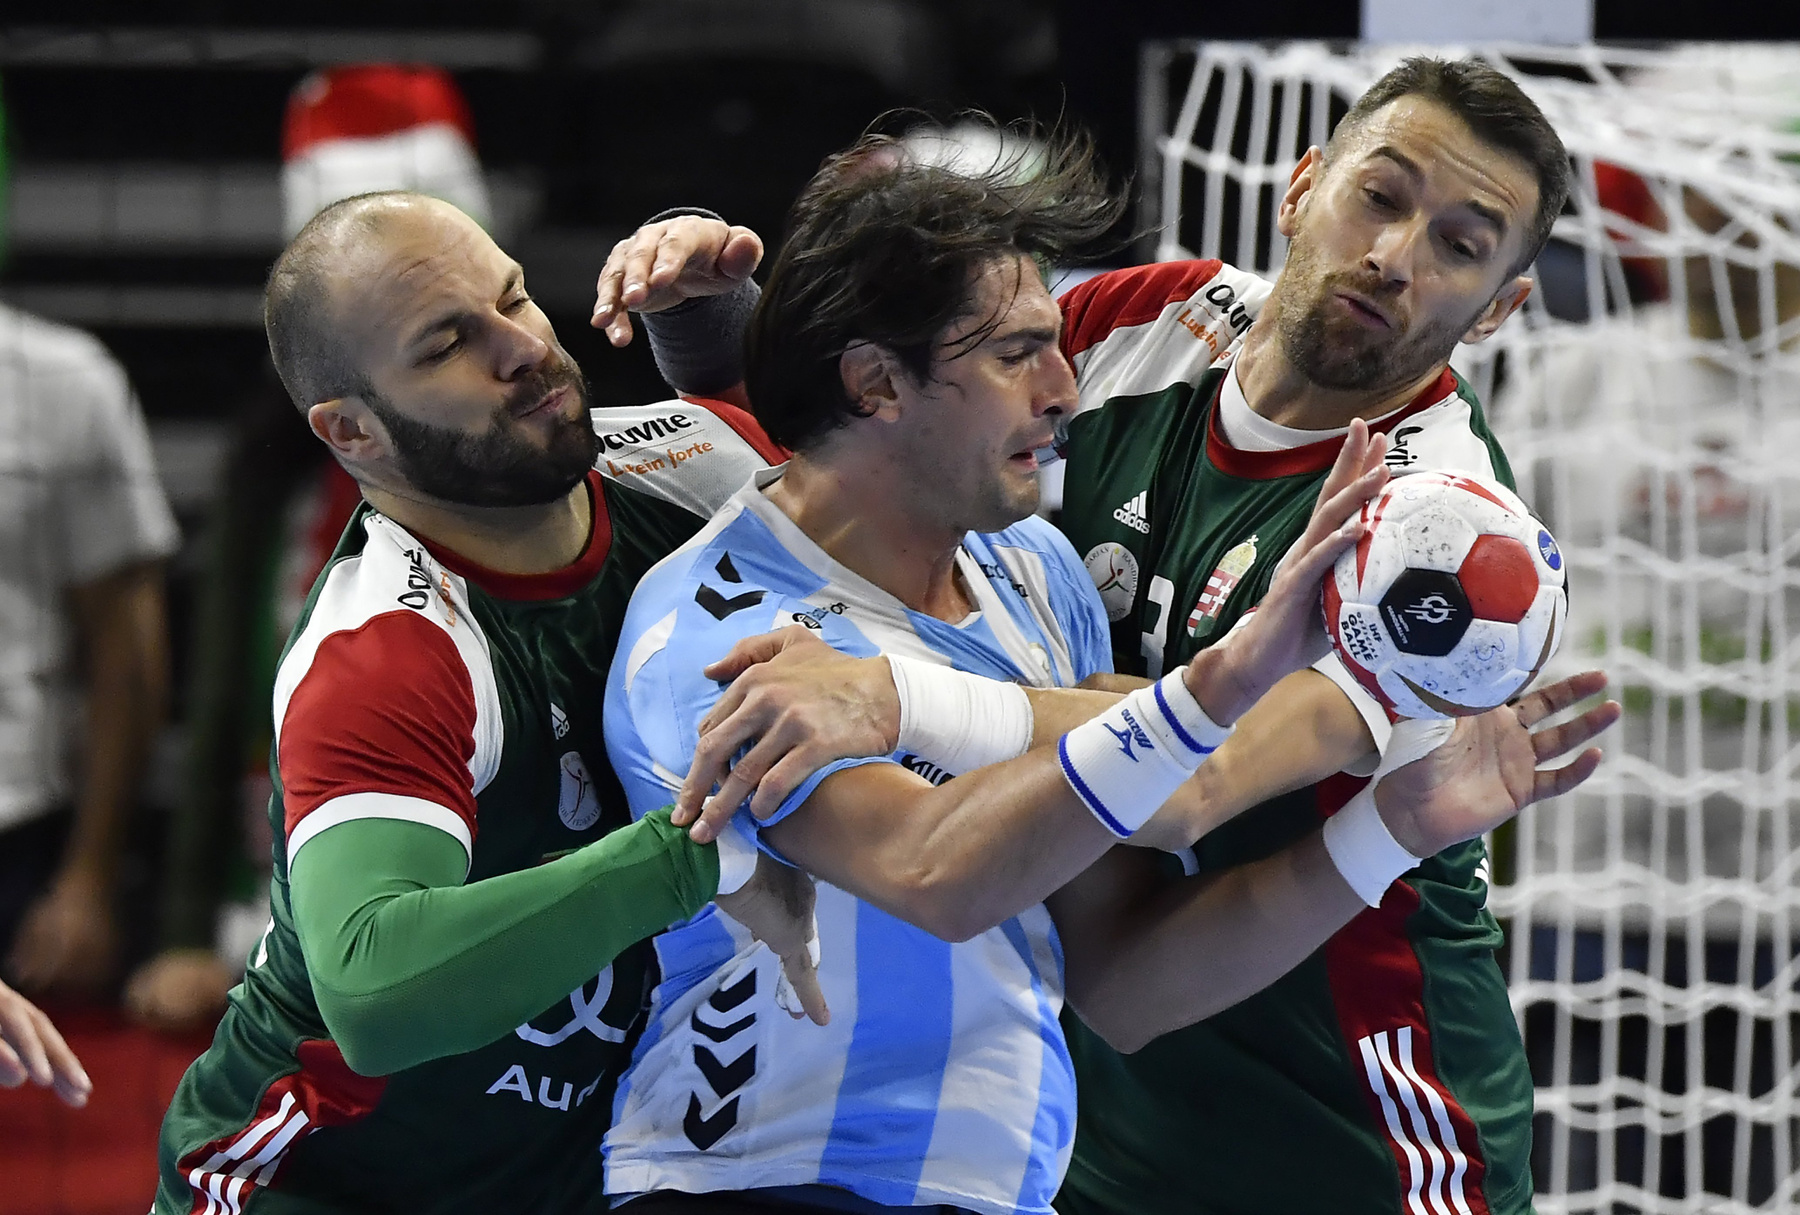 A magyar válogatott játékosai a német-dán közös rendezésû férfi kézilabda-világbajnokság csoportkörének 1. fordulójában játszott Magyarország - Argentína mérkõzés végén